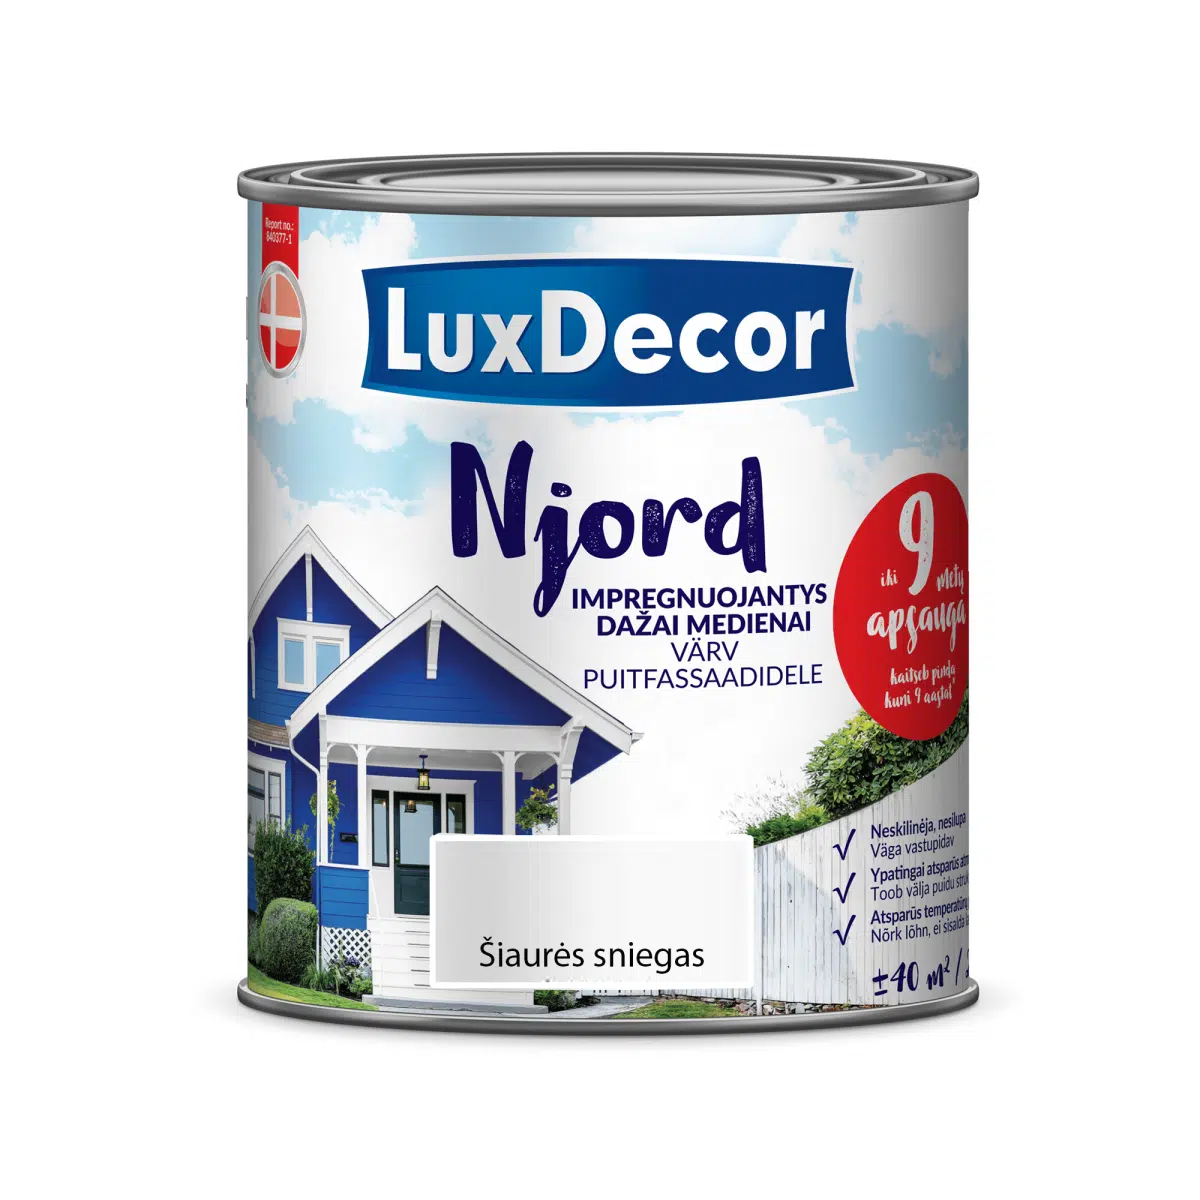 Njord impregnuojantys dažai medienai LuxDecor